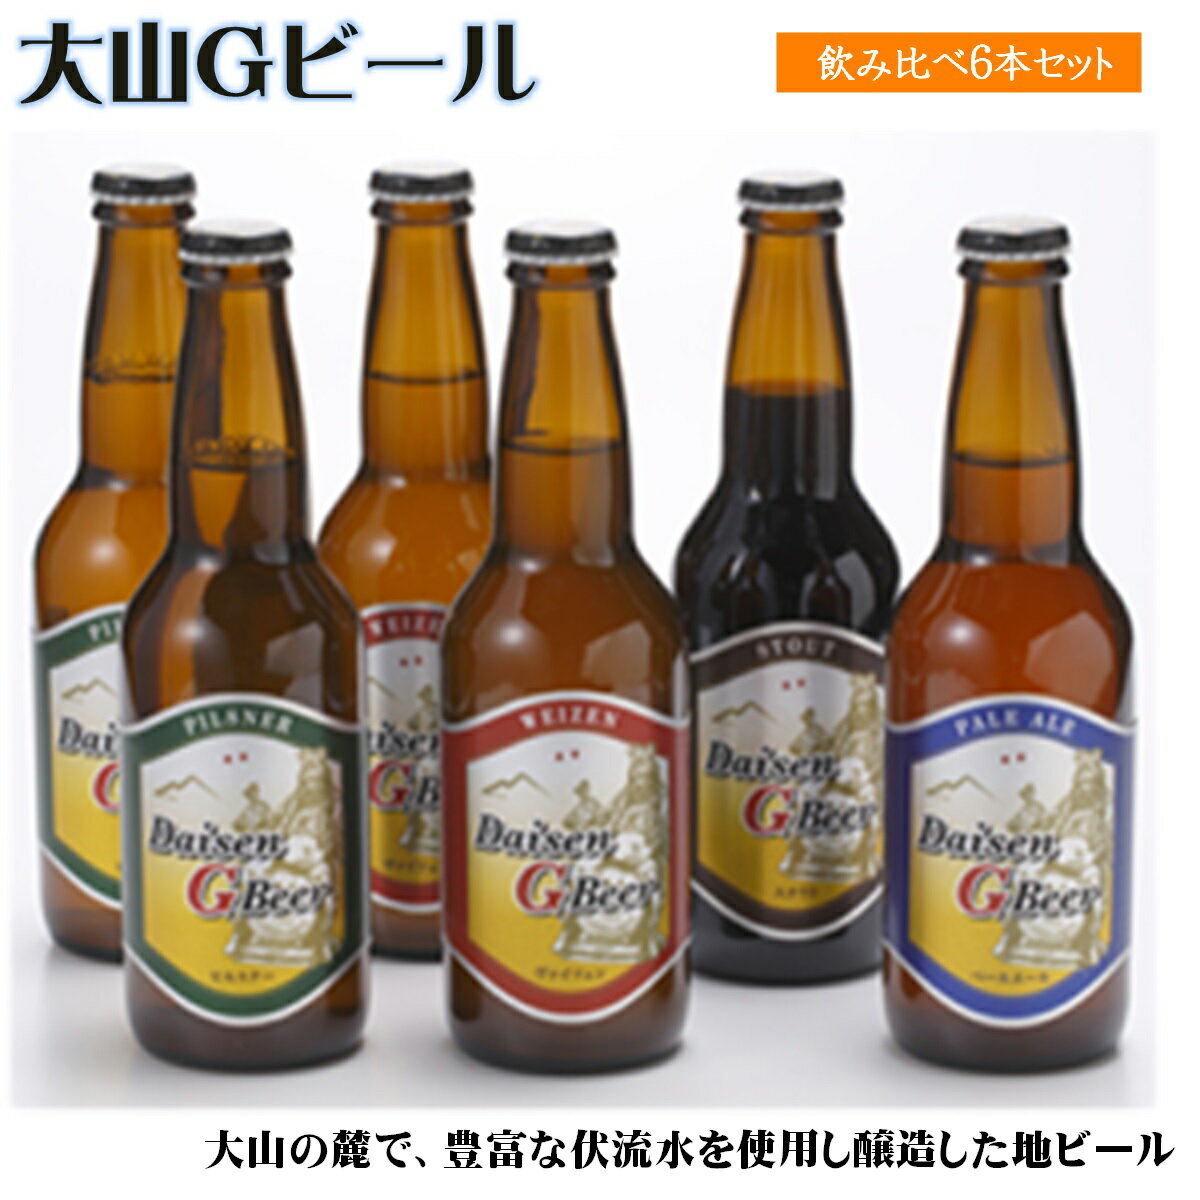 大山Gビール飲み比べ6本セット[22-010-010]地ビール